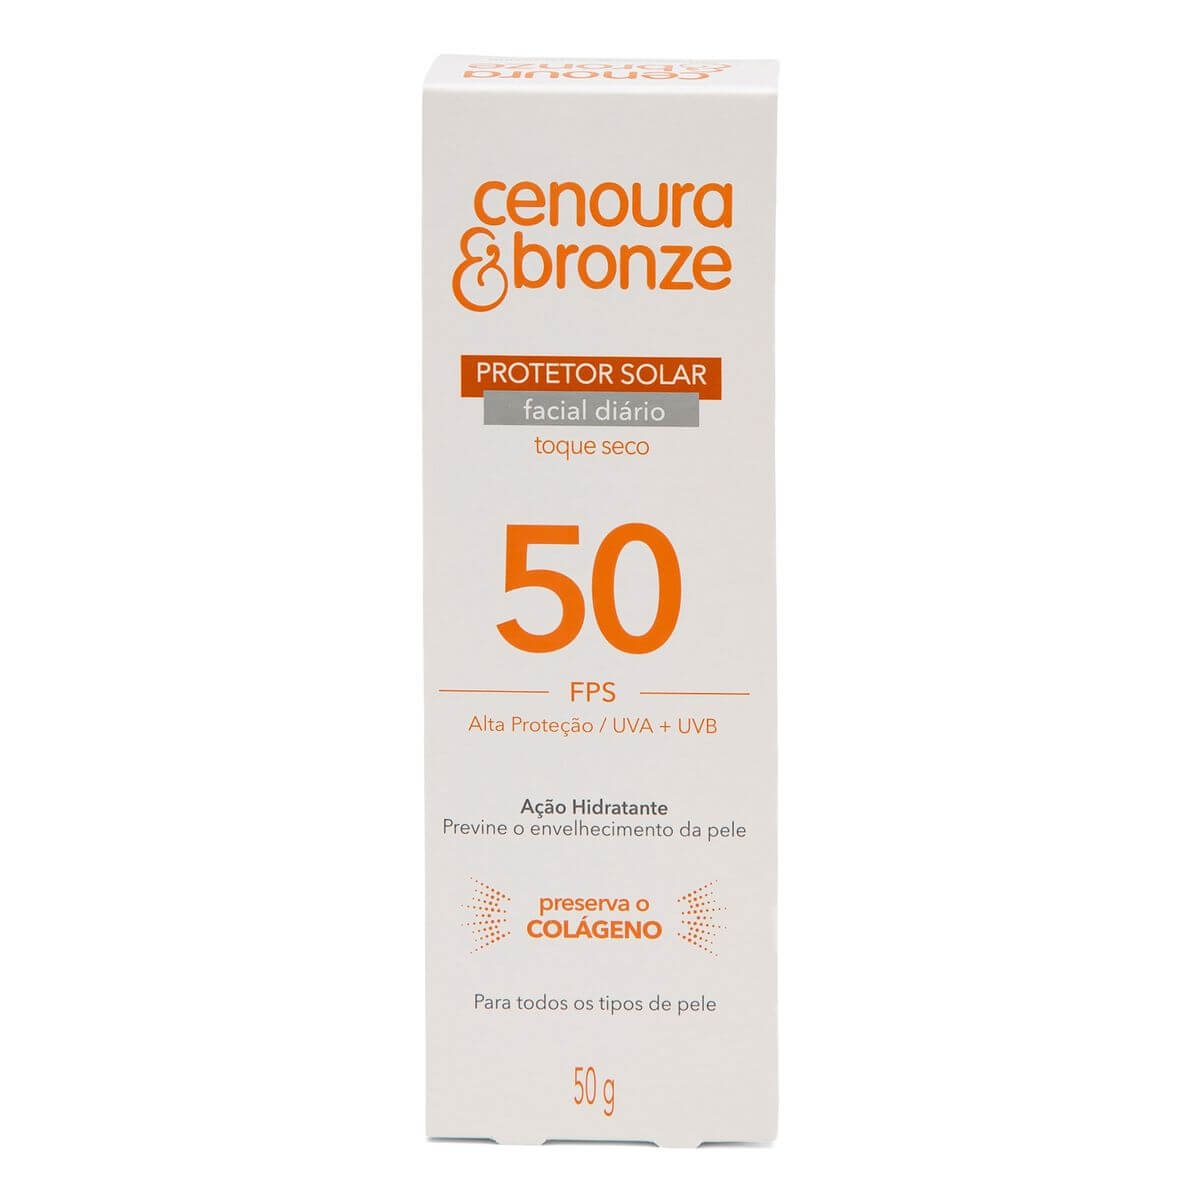 Protetor Solar Facial Cenoura & Bronze FPS50 com 50g